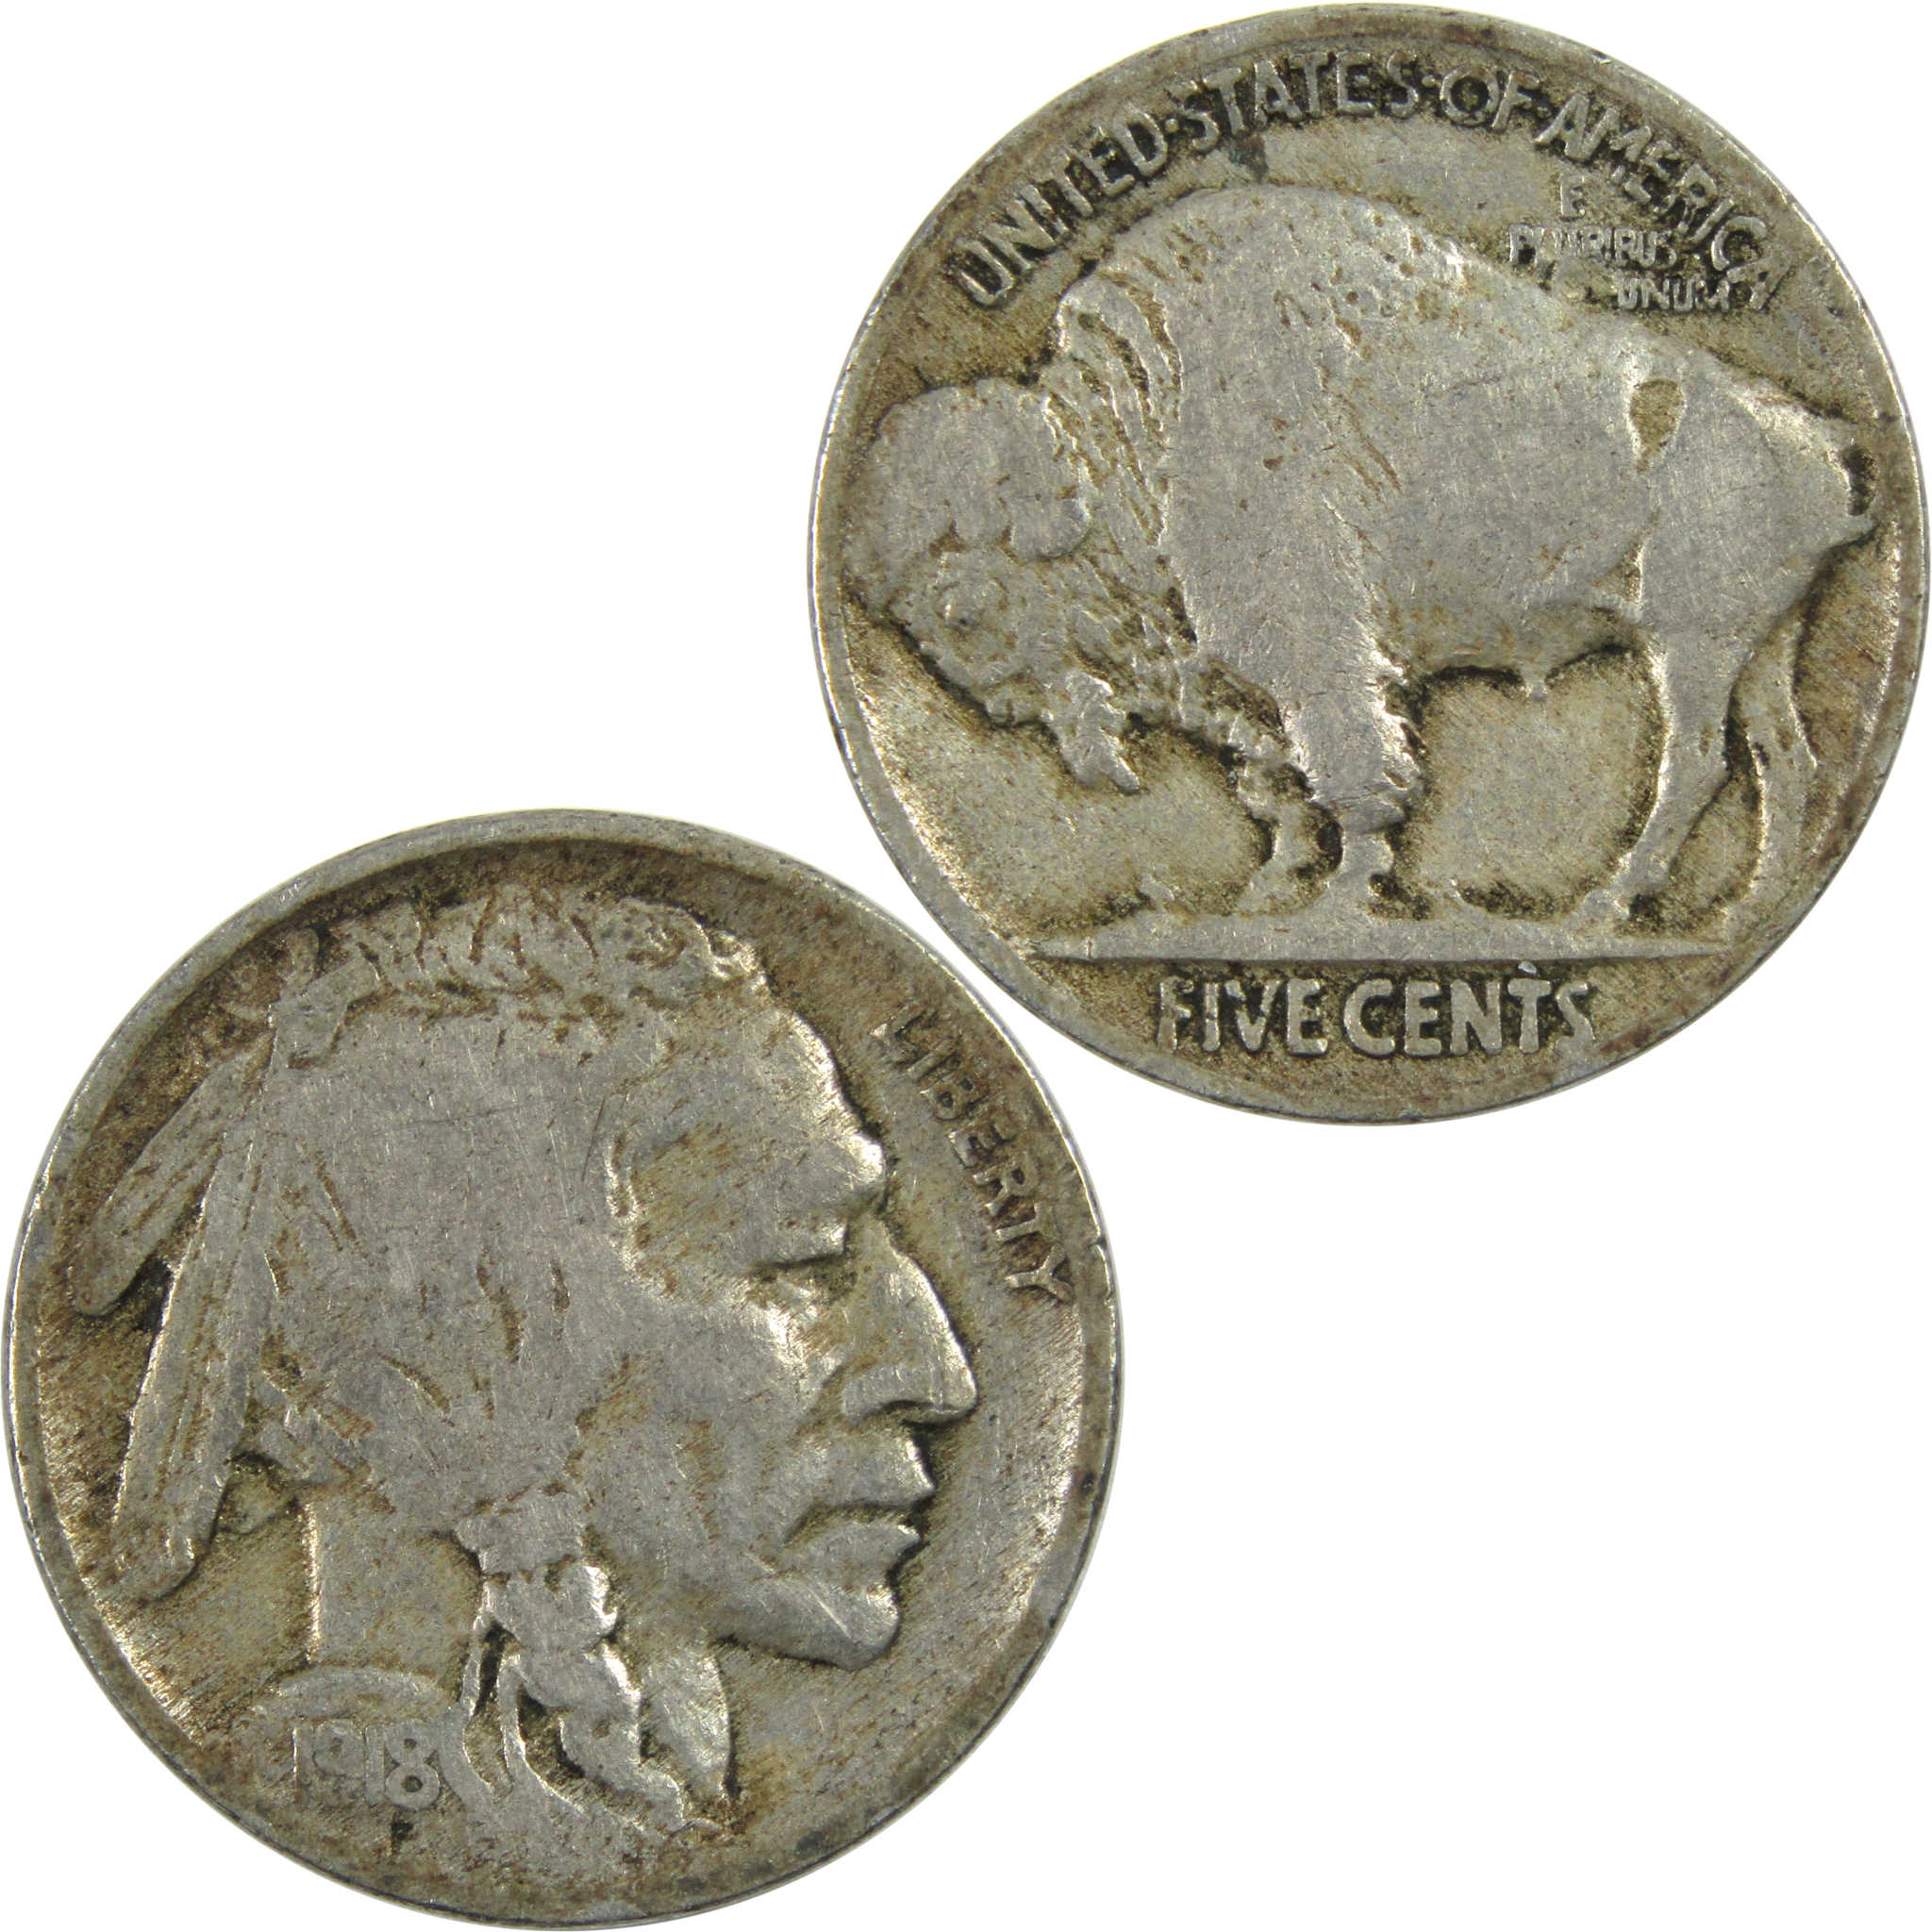 1918 Indian Head Buffalo Nickel VG Very Good 5c Coin SKU:I13005